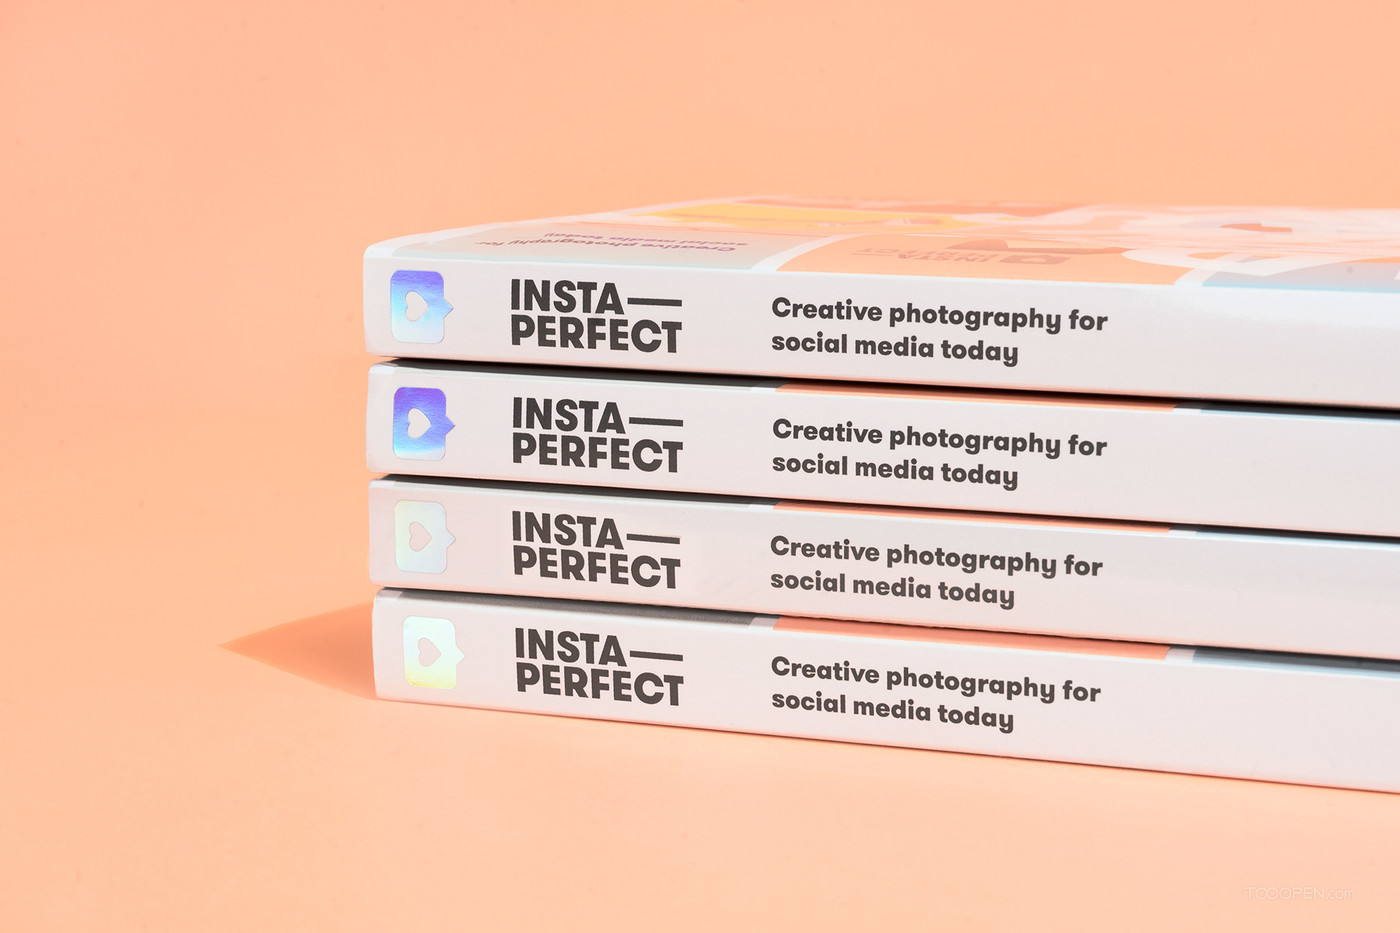 Insta-Perfect创意摄影书籍设计欣赏-05